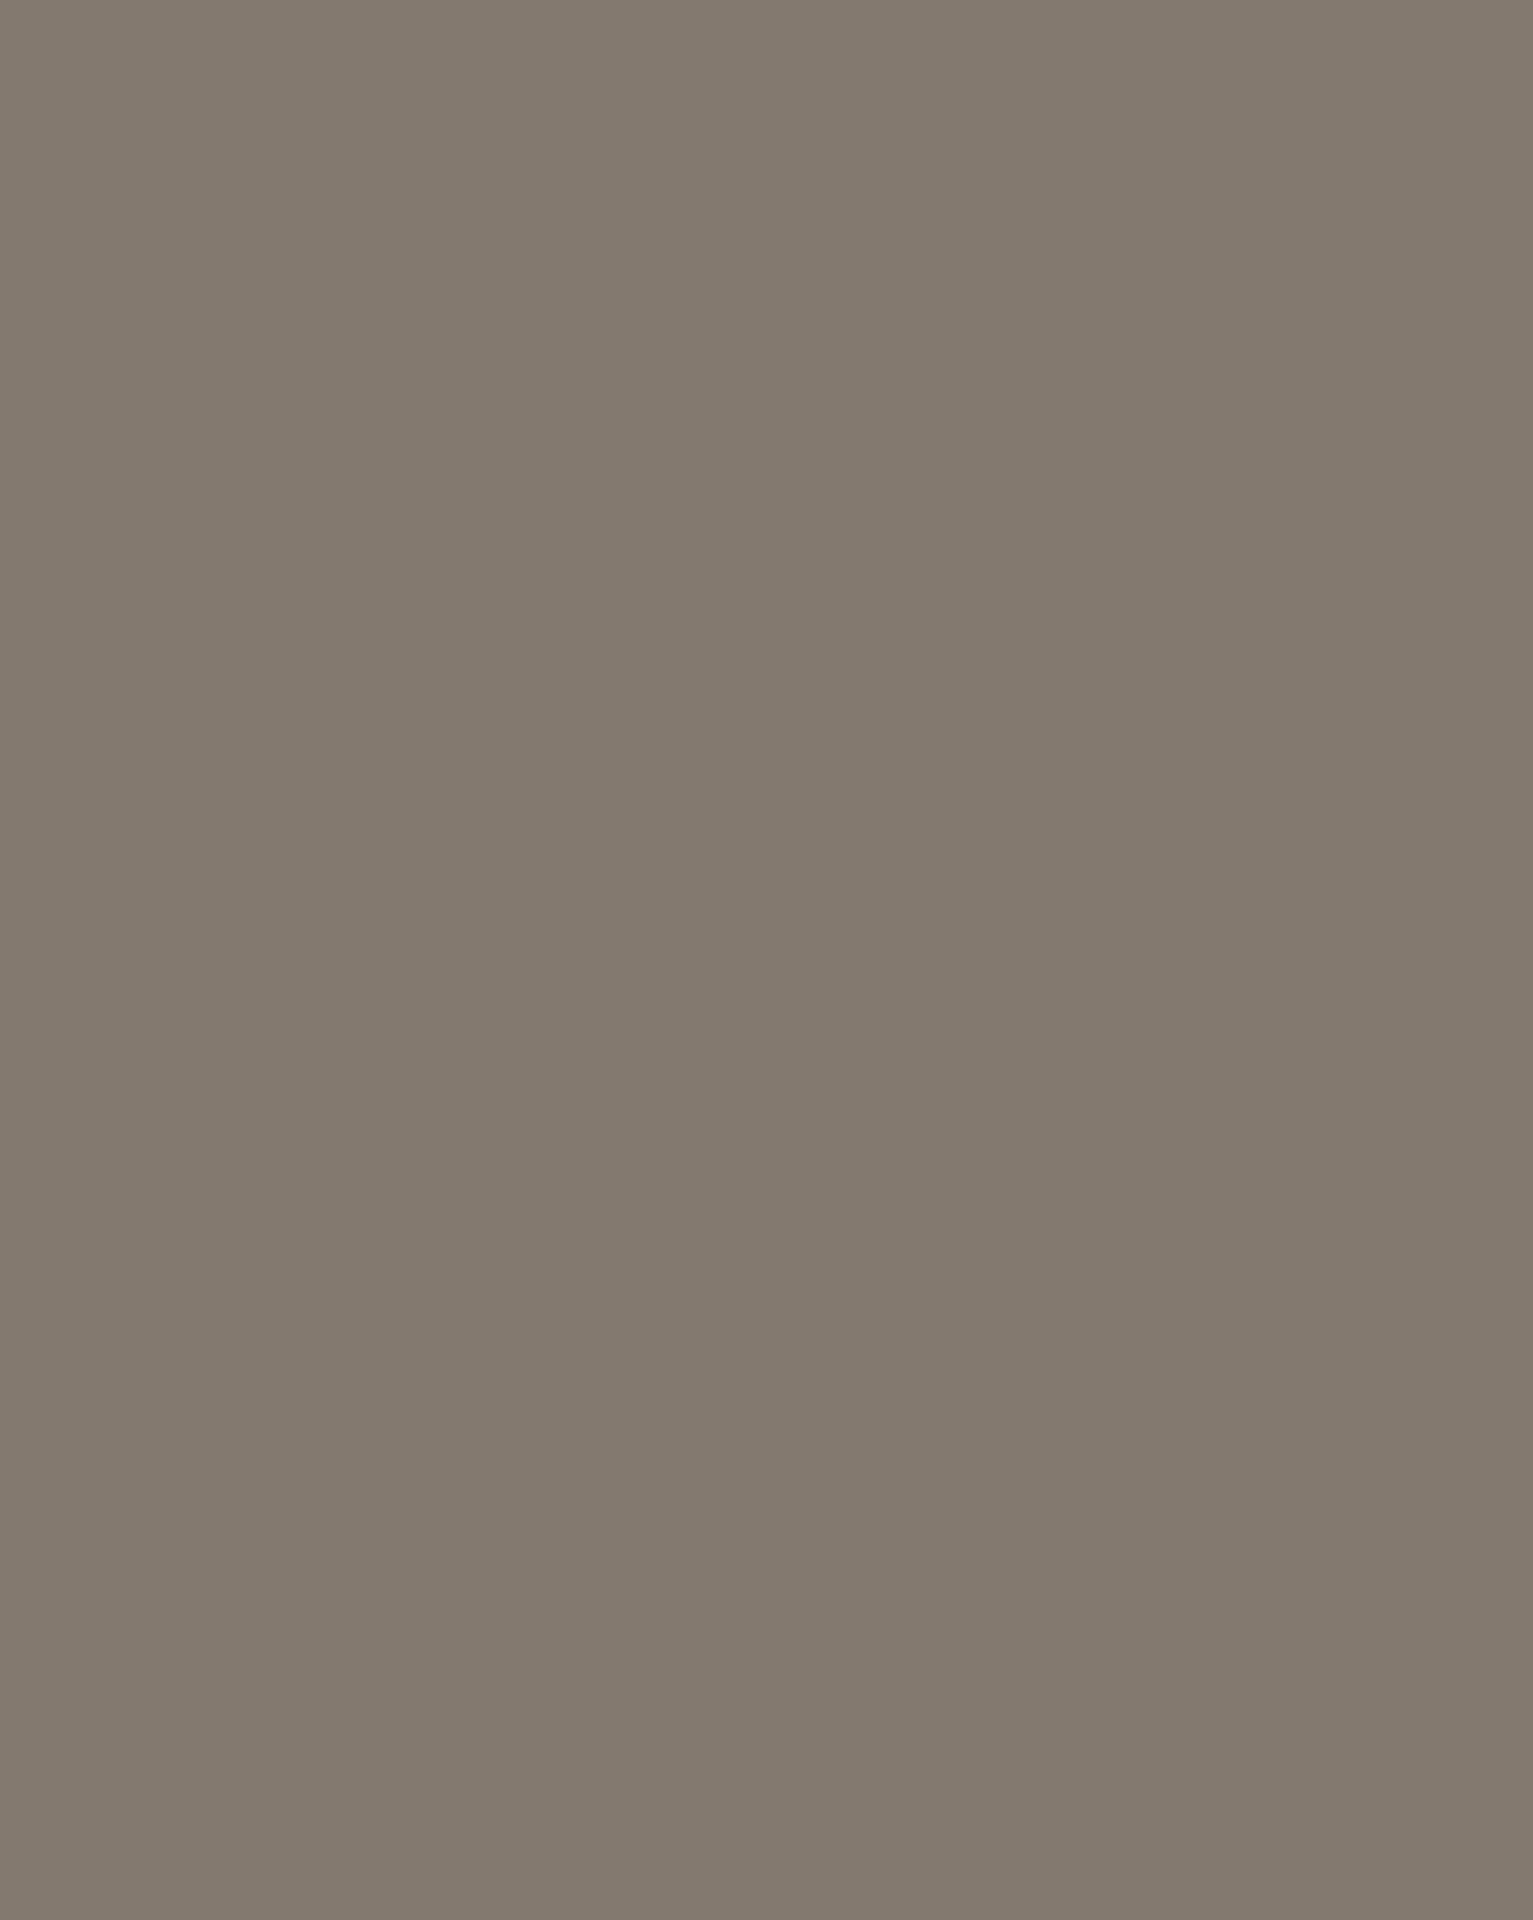 Федор Богородский. Автопортрет (фрагмент). 1918. Государственная Третьяковская галерея, Москва